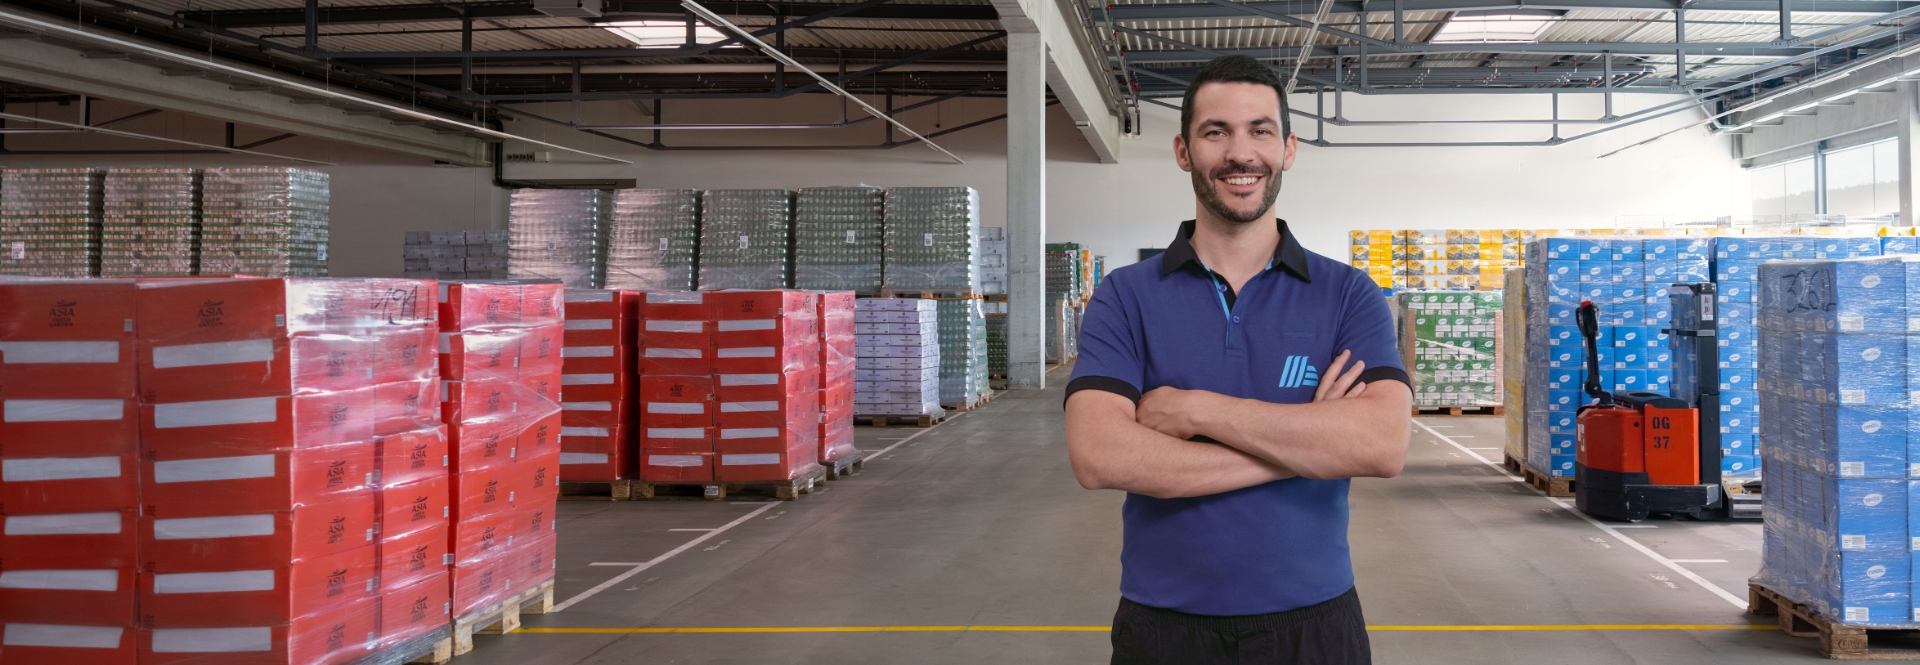 Logistics & Supply Chain Management: Bei meinem Job will ich neues lernen. Und du?